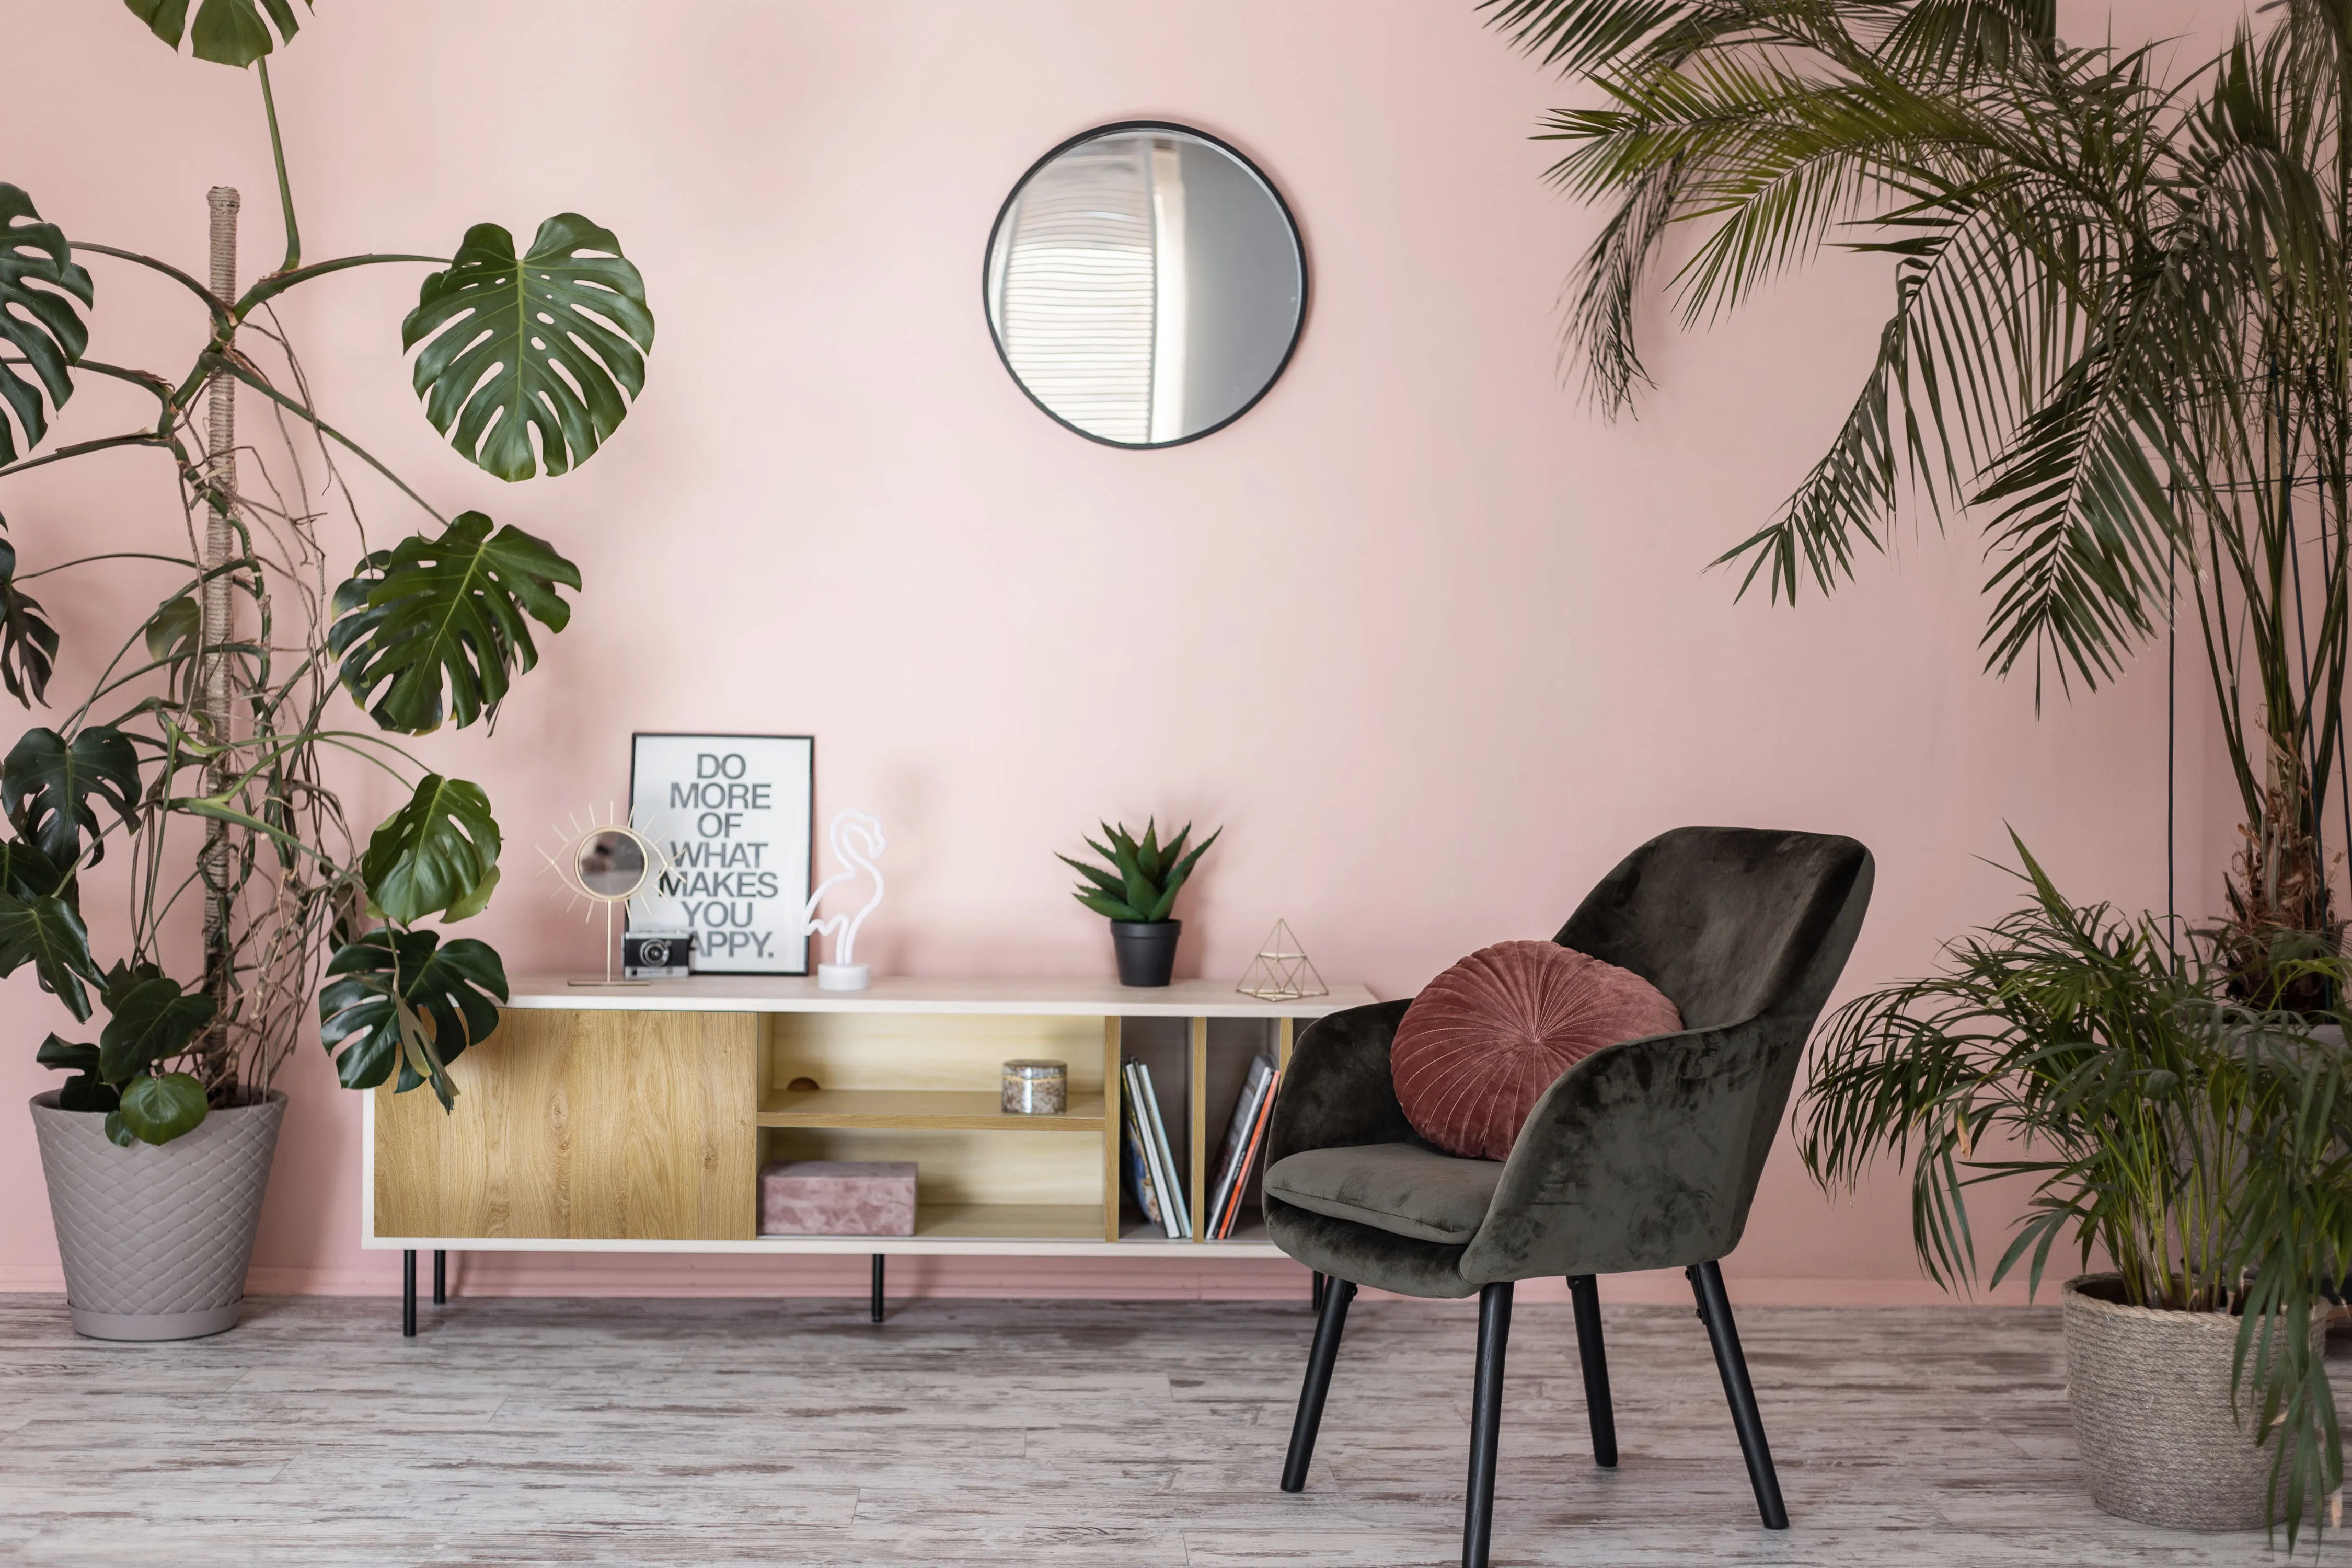 Salon w kolorze różowym w stylu vintage z komodą i zielonym fotelem.